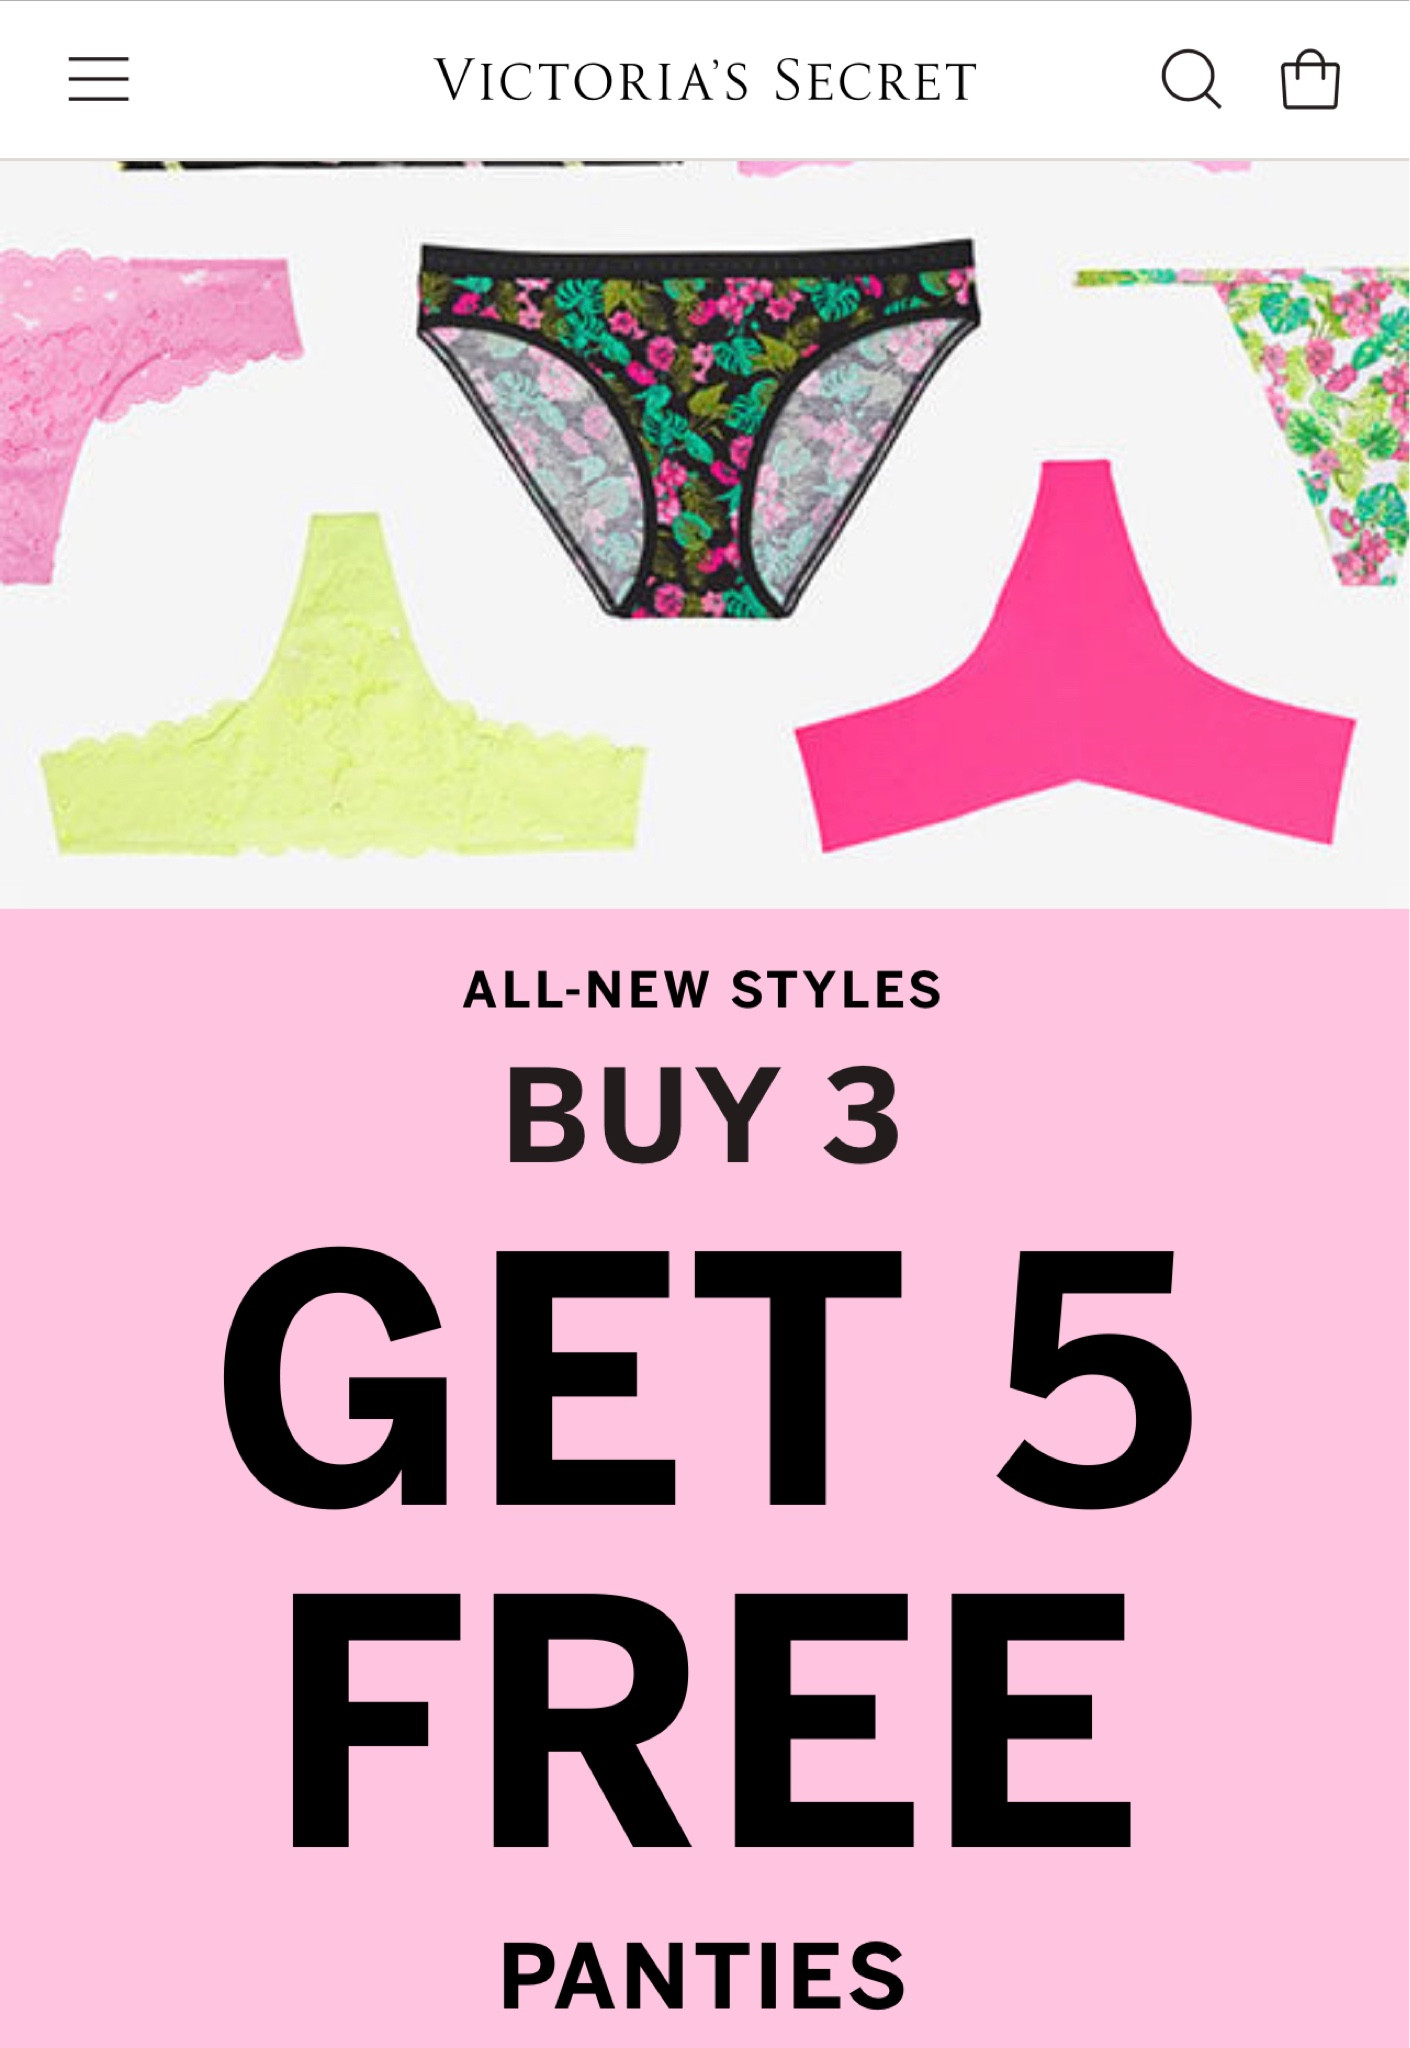 Victoria's Secret Panties Buy 3 Get 5 FREE!